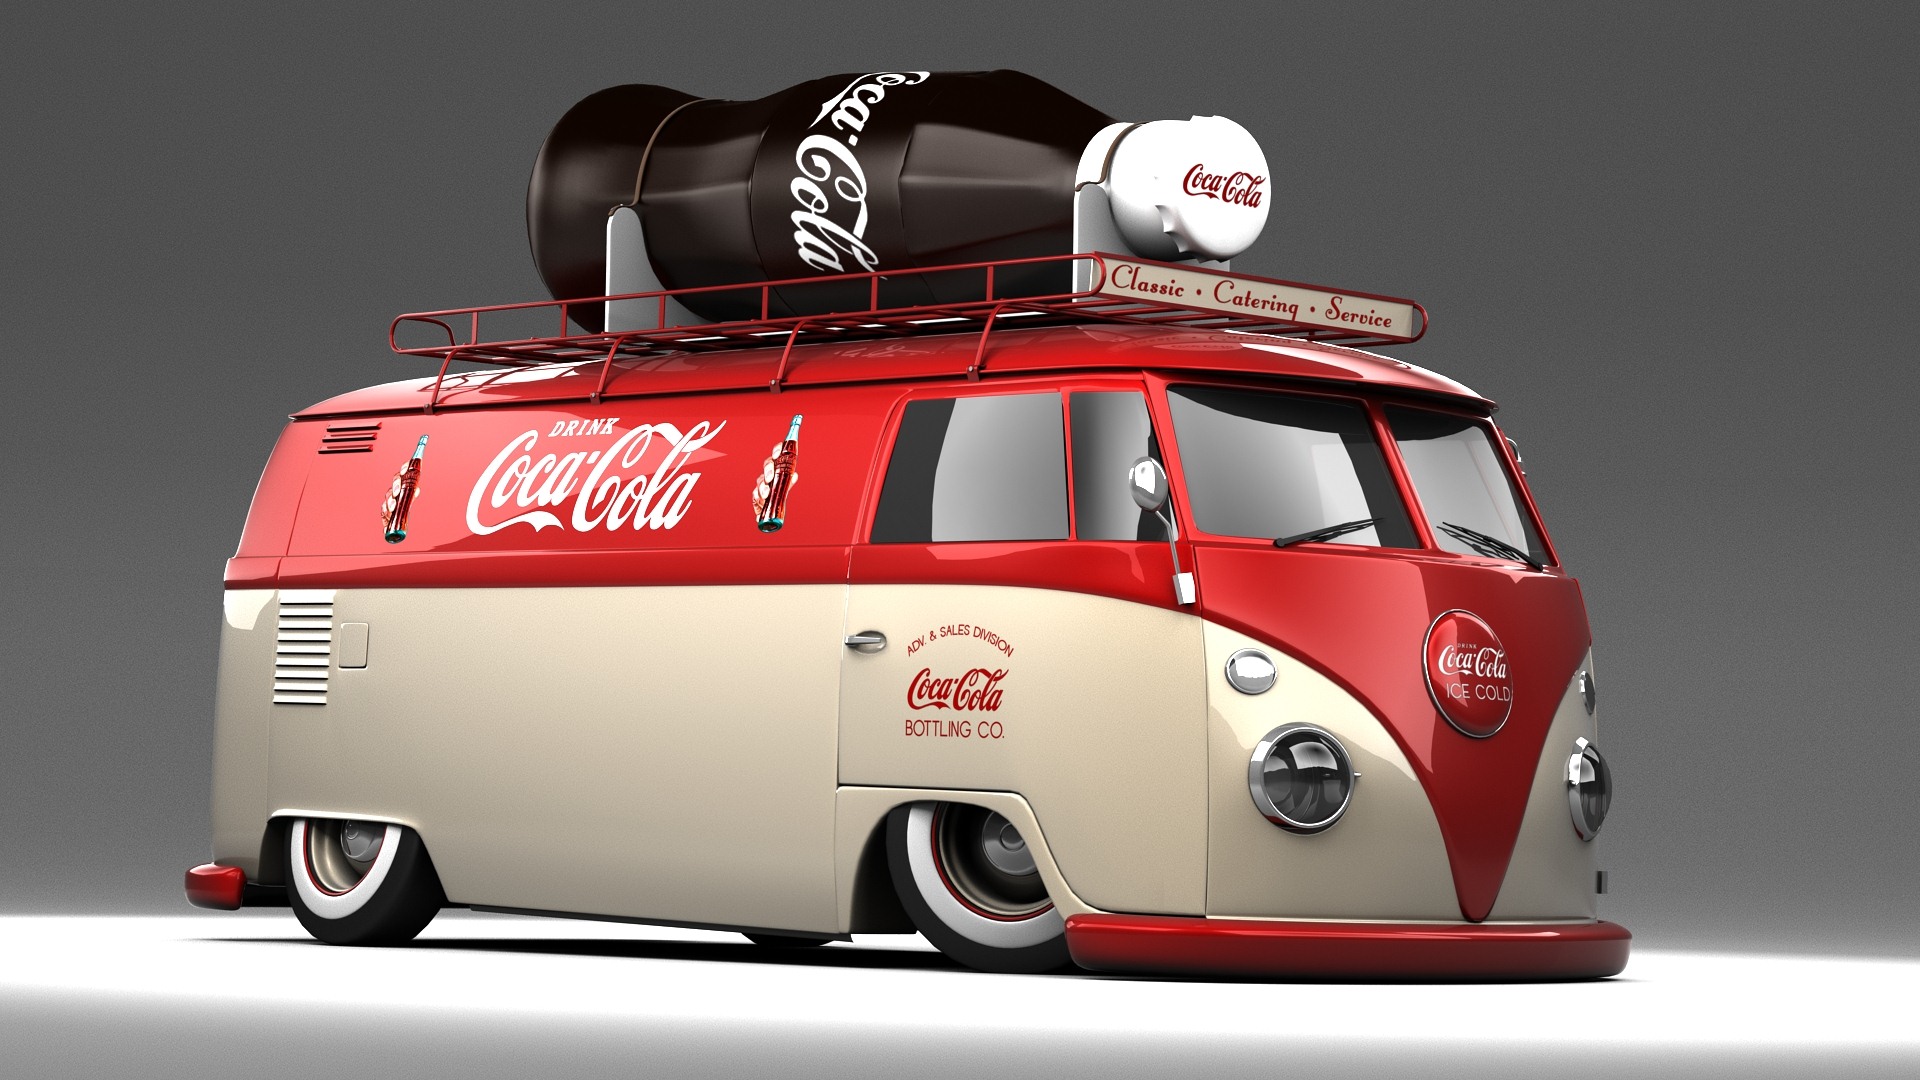 volkswagen, products, coca cola, cgi